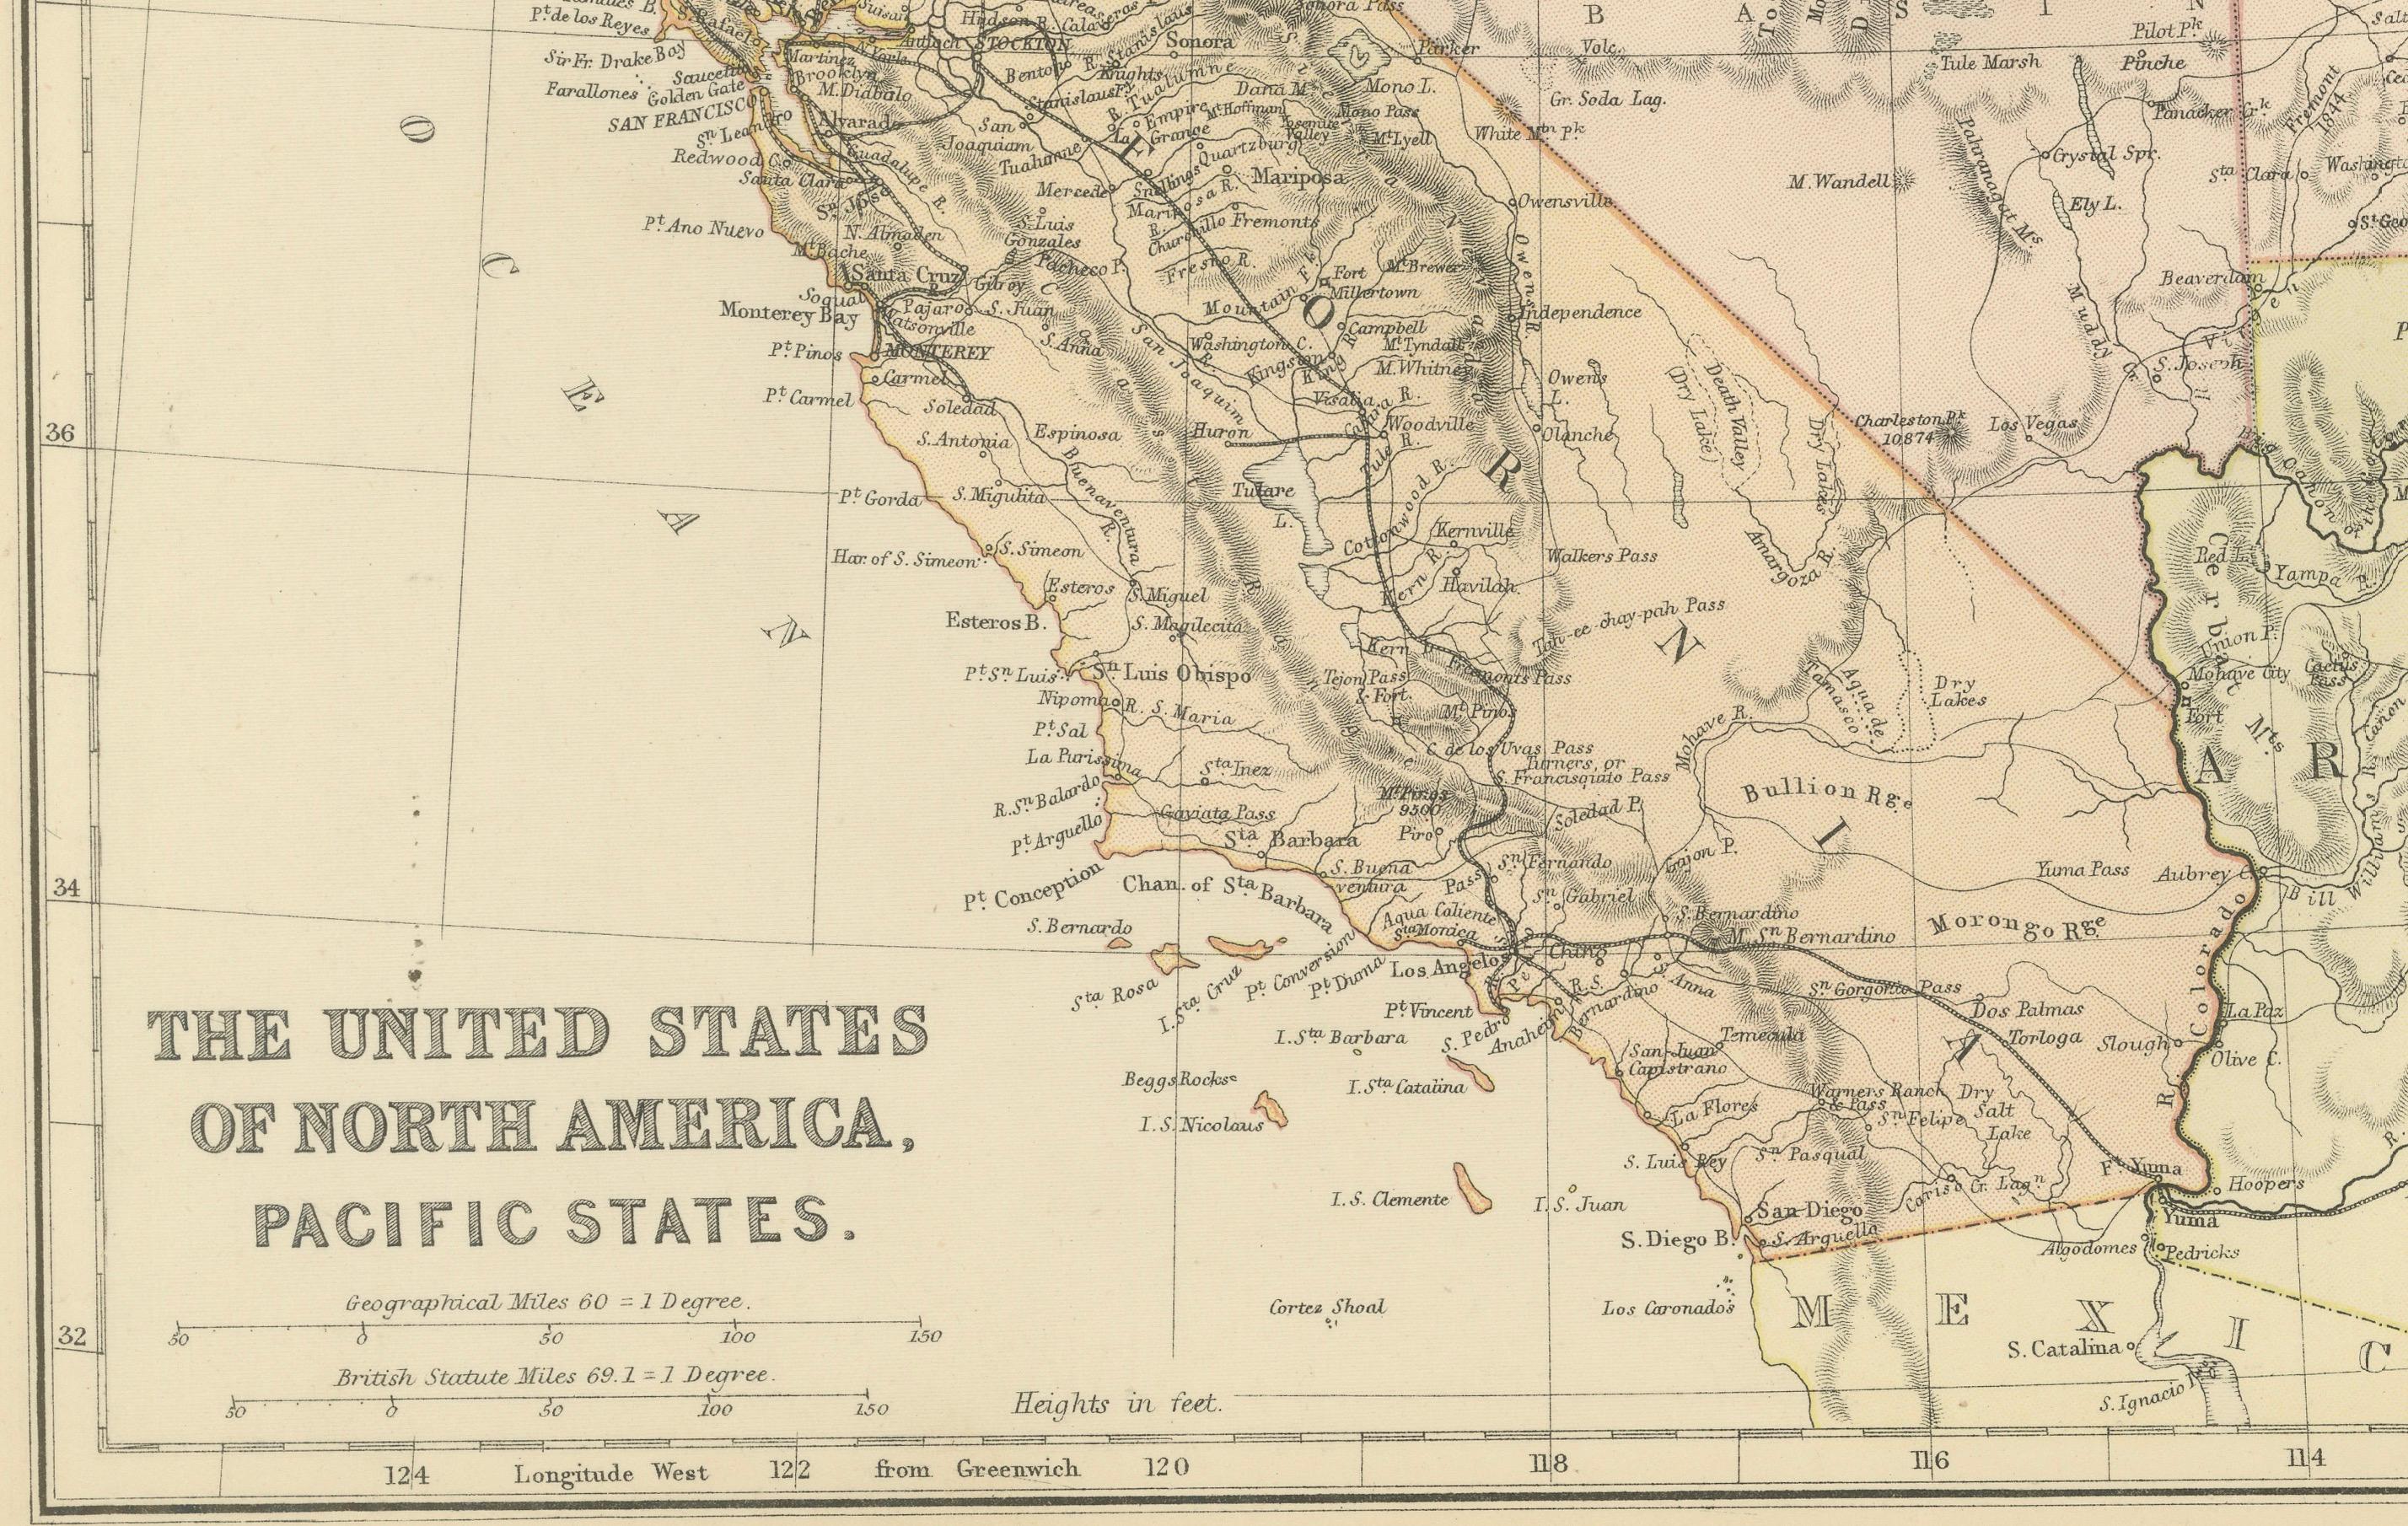 Die Karte stammt aus dem Blackie Atlas von 1882 und zeigt die pazifischen Staaten der Vereinigten Staaten von Amerika in dieser Zeit. Im Folgenden finden Sie einige Details und historische Zusammenhänge über diese Region zu jener Zeit:

1.